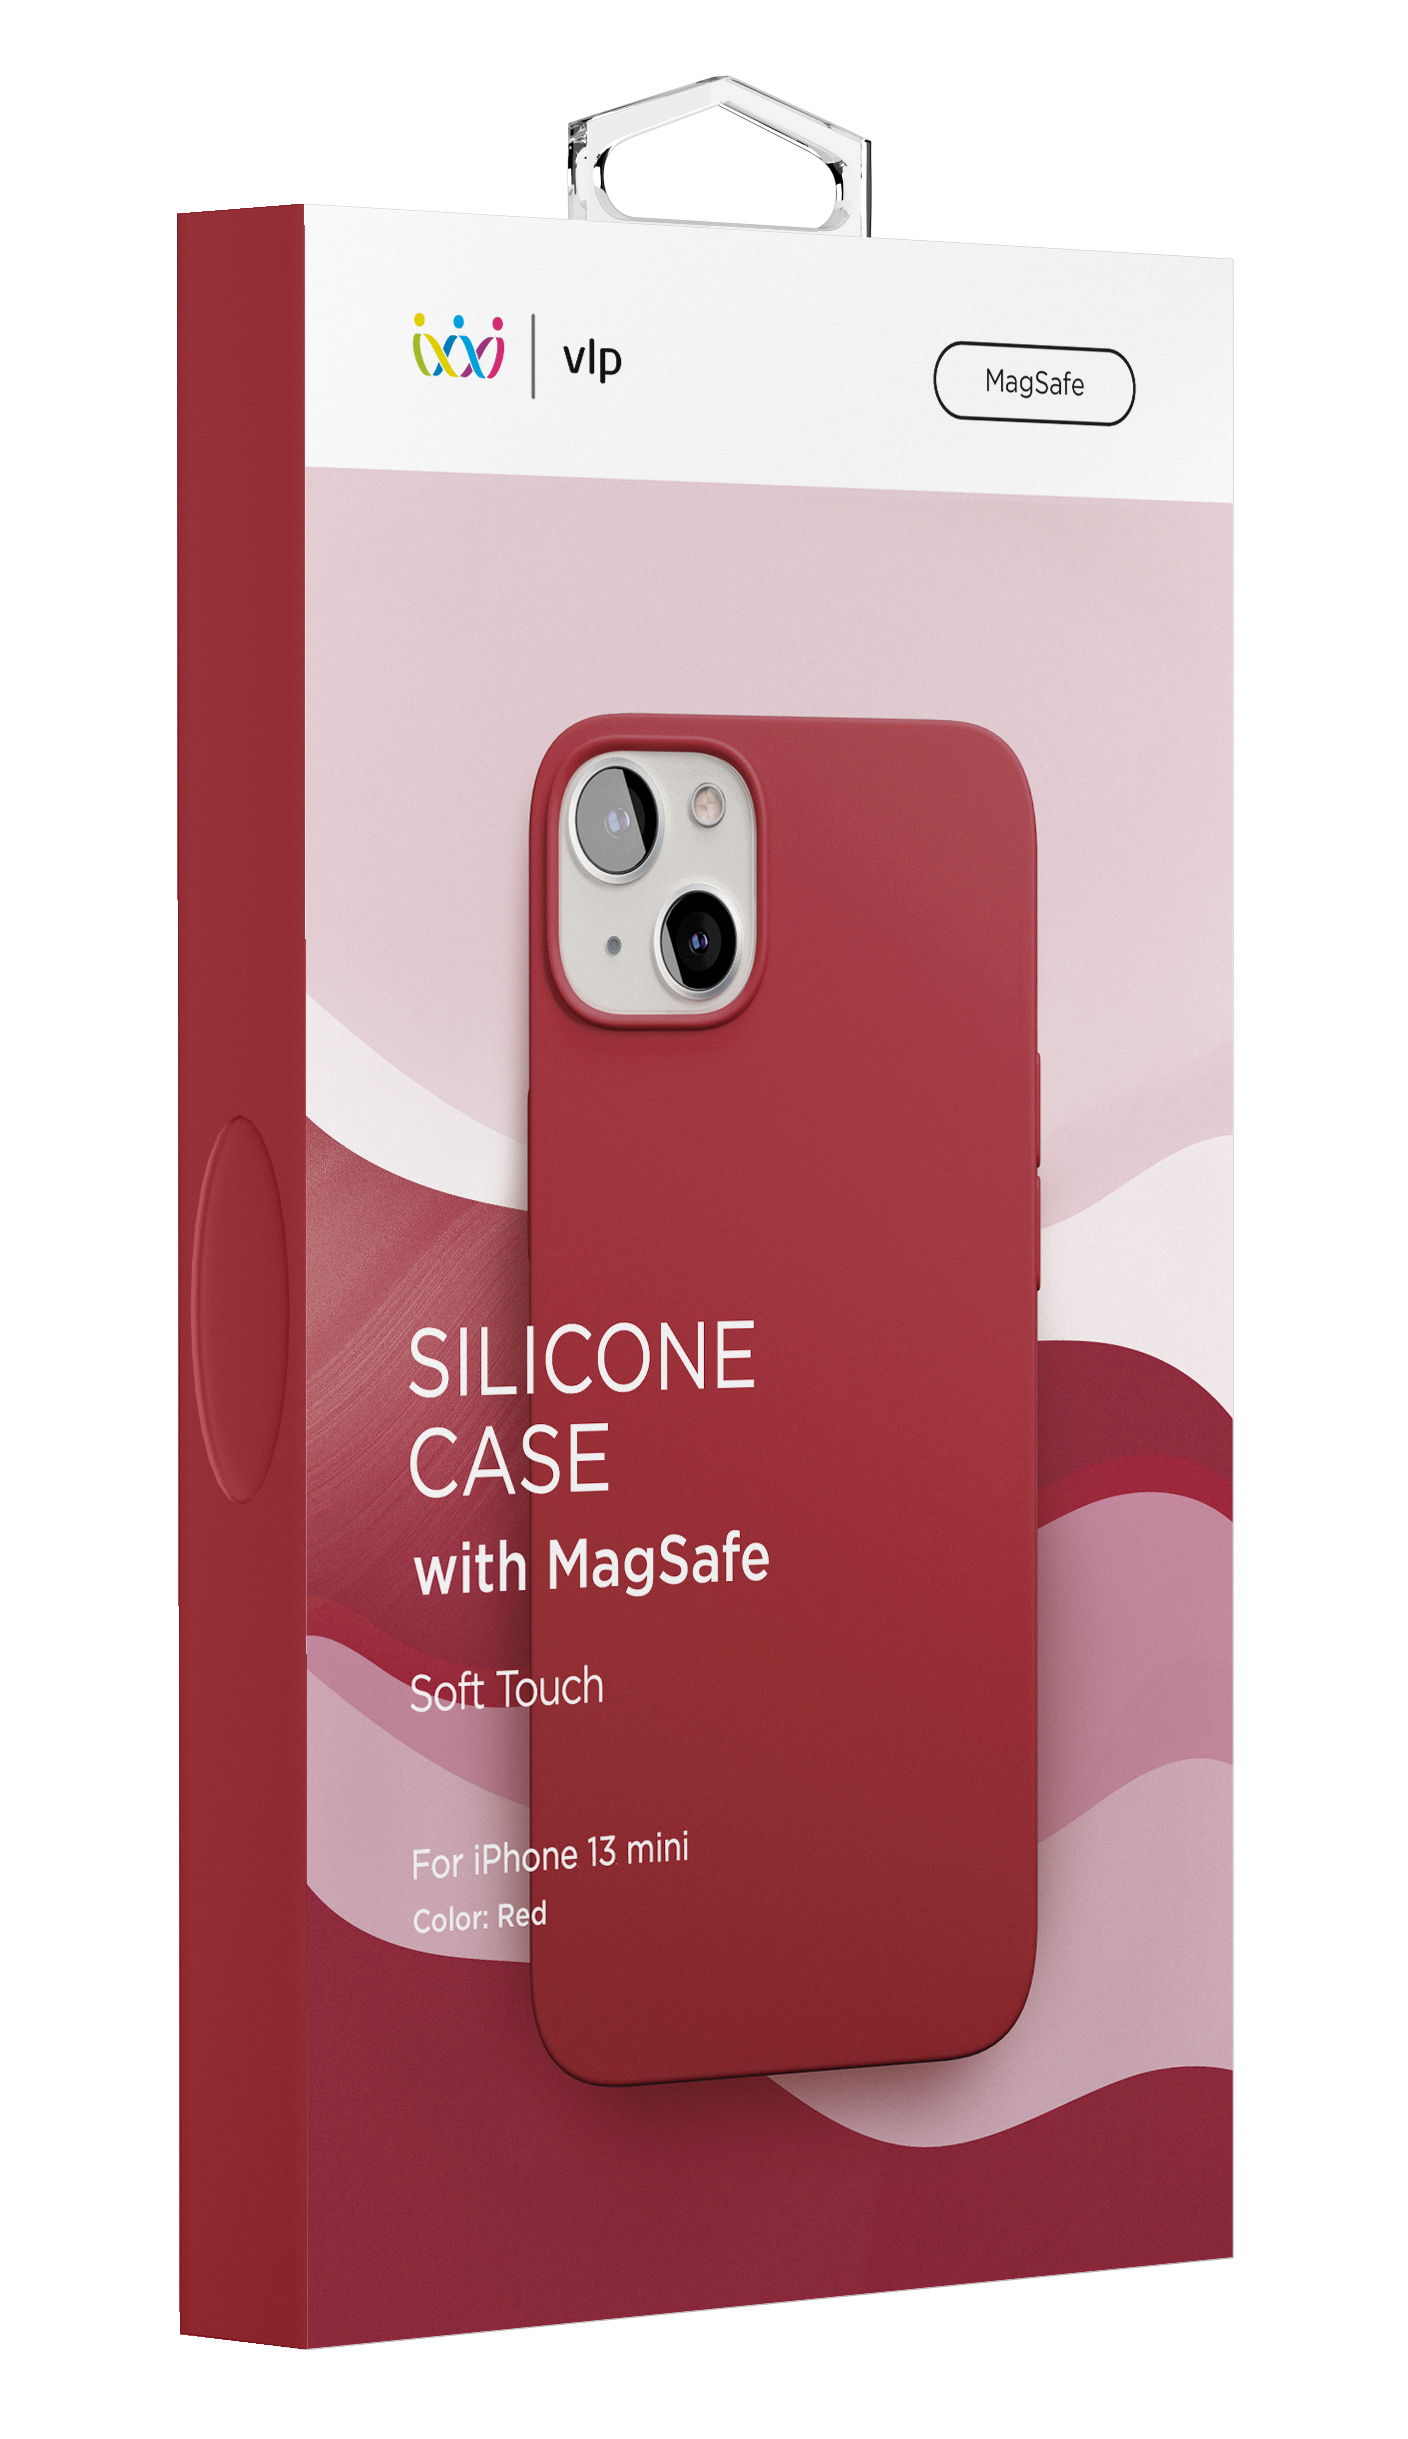 Фото — Чехол защитный vlp Silicone case with MagSafe для iPhone 13 mini, красный